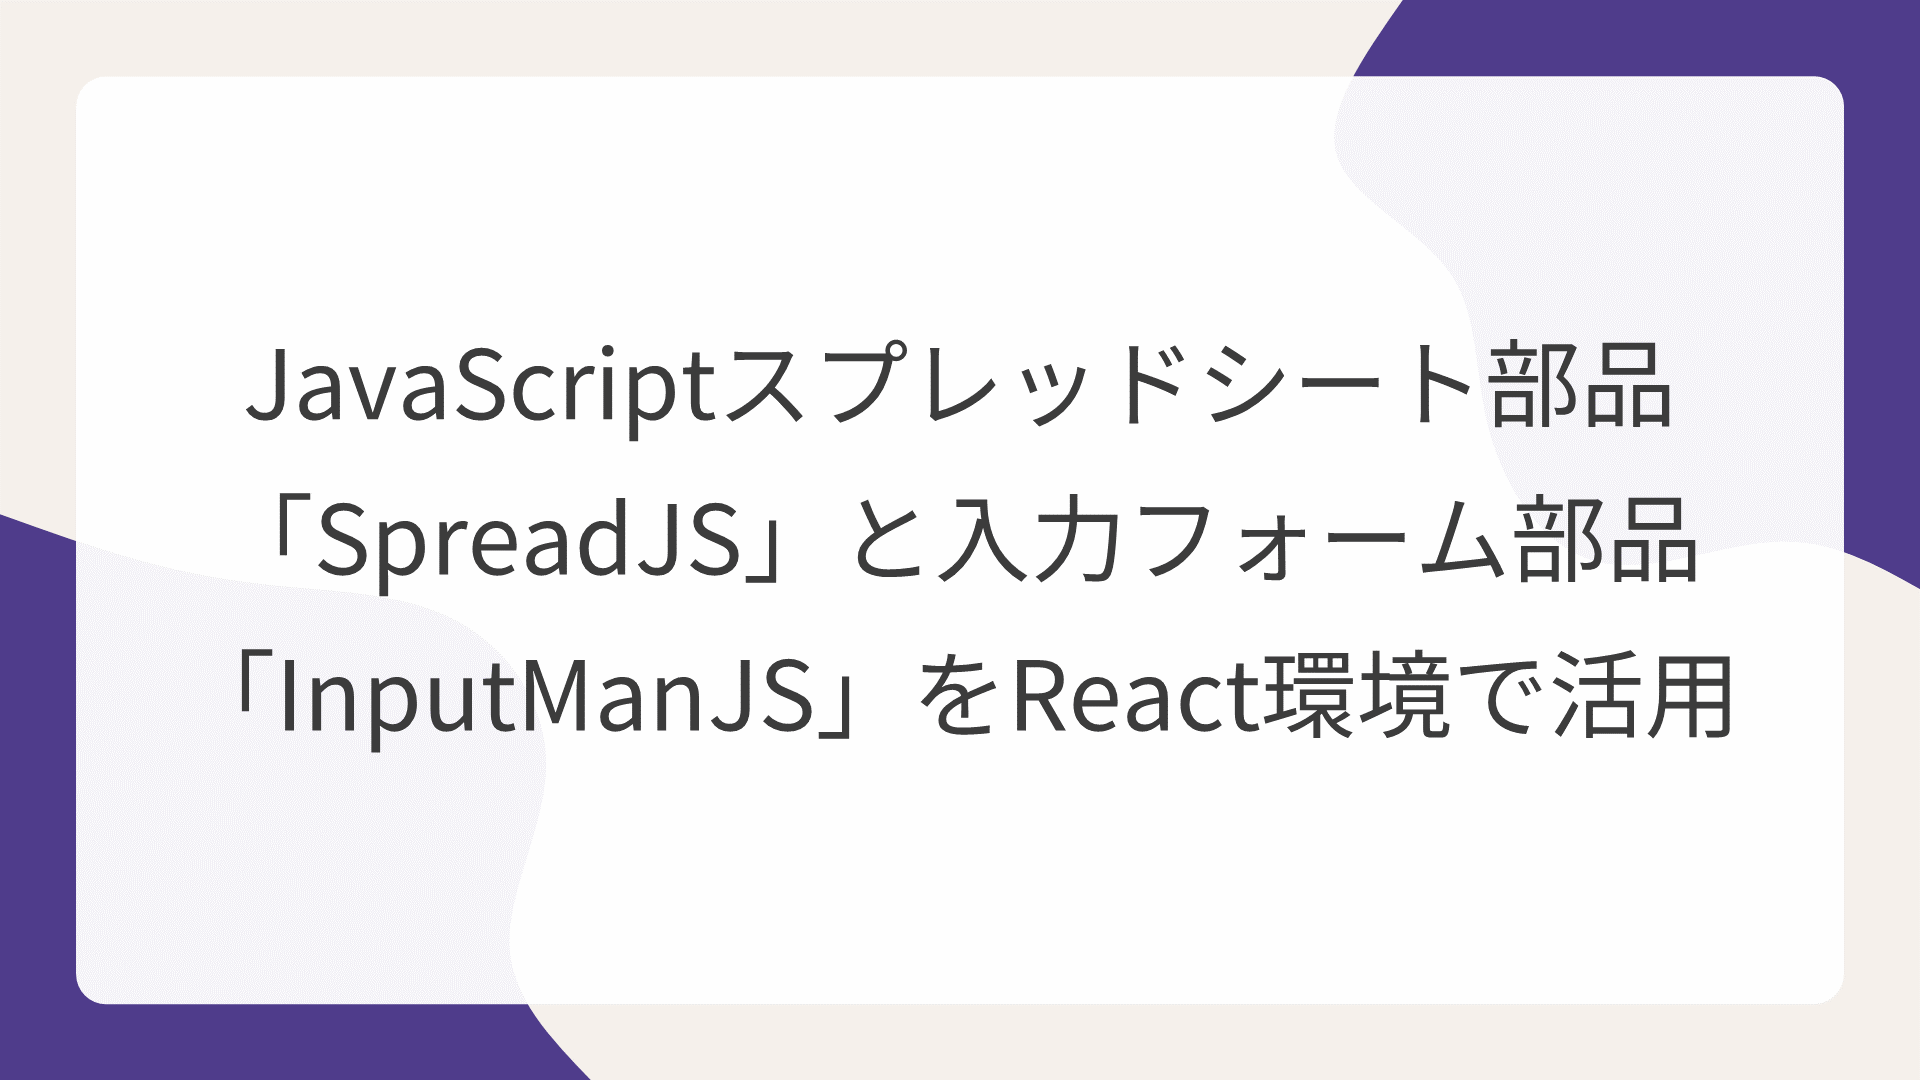 JavaScriptスプレッドシート部品「SpreadJS」と入力フォーム部品「InputManJS」をReact環境で活用